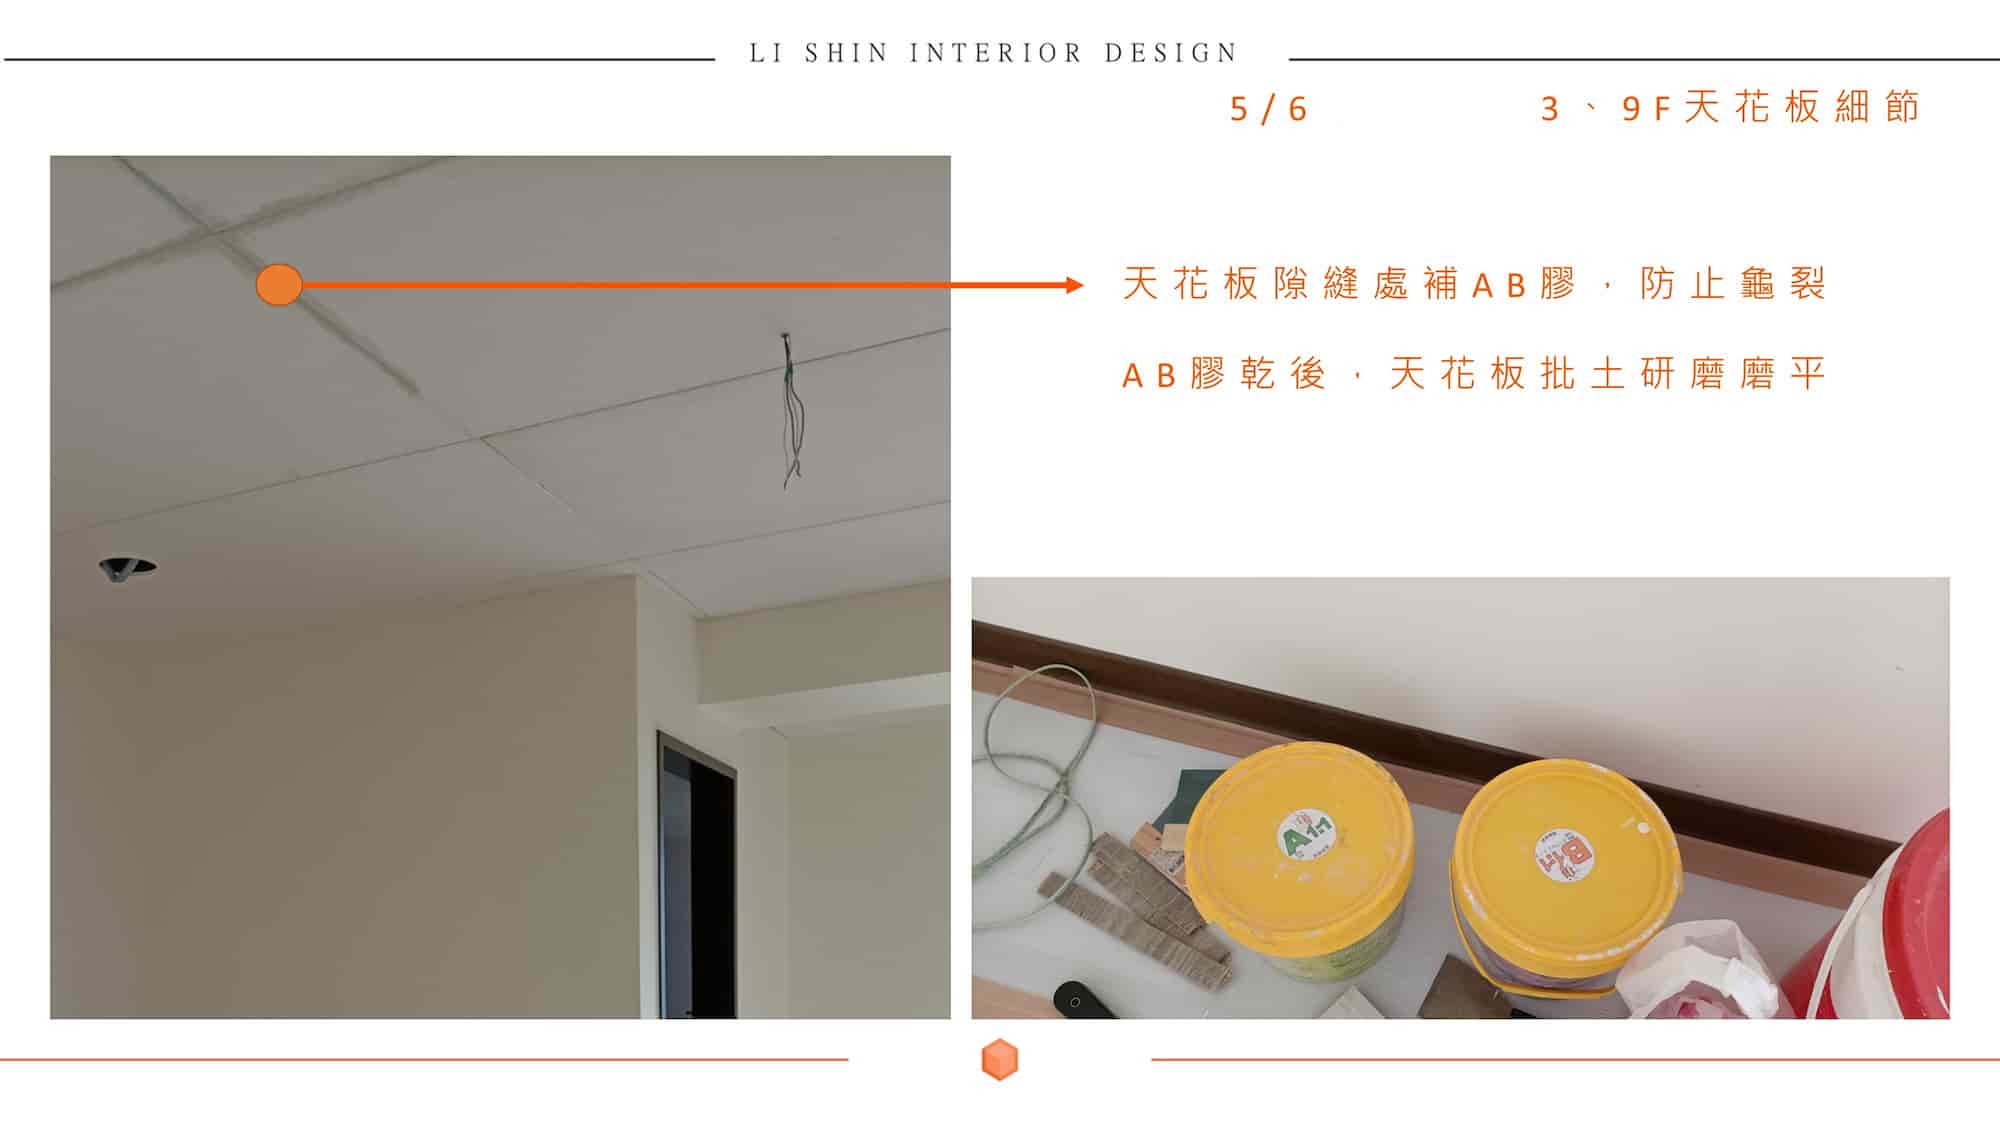 辦公室裝修有新作隔間或天花板，肯定就要知道油漆漆料及施工方式